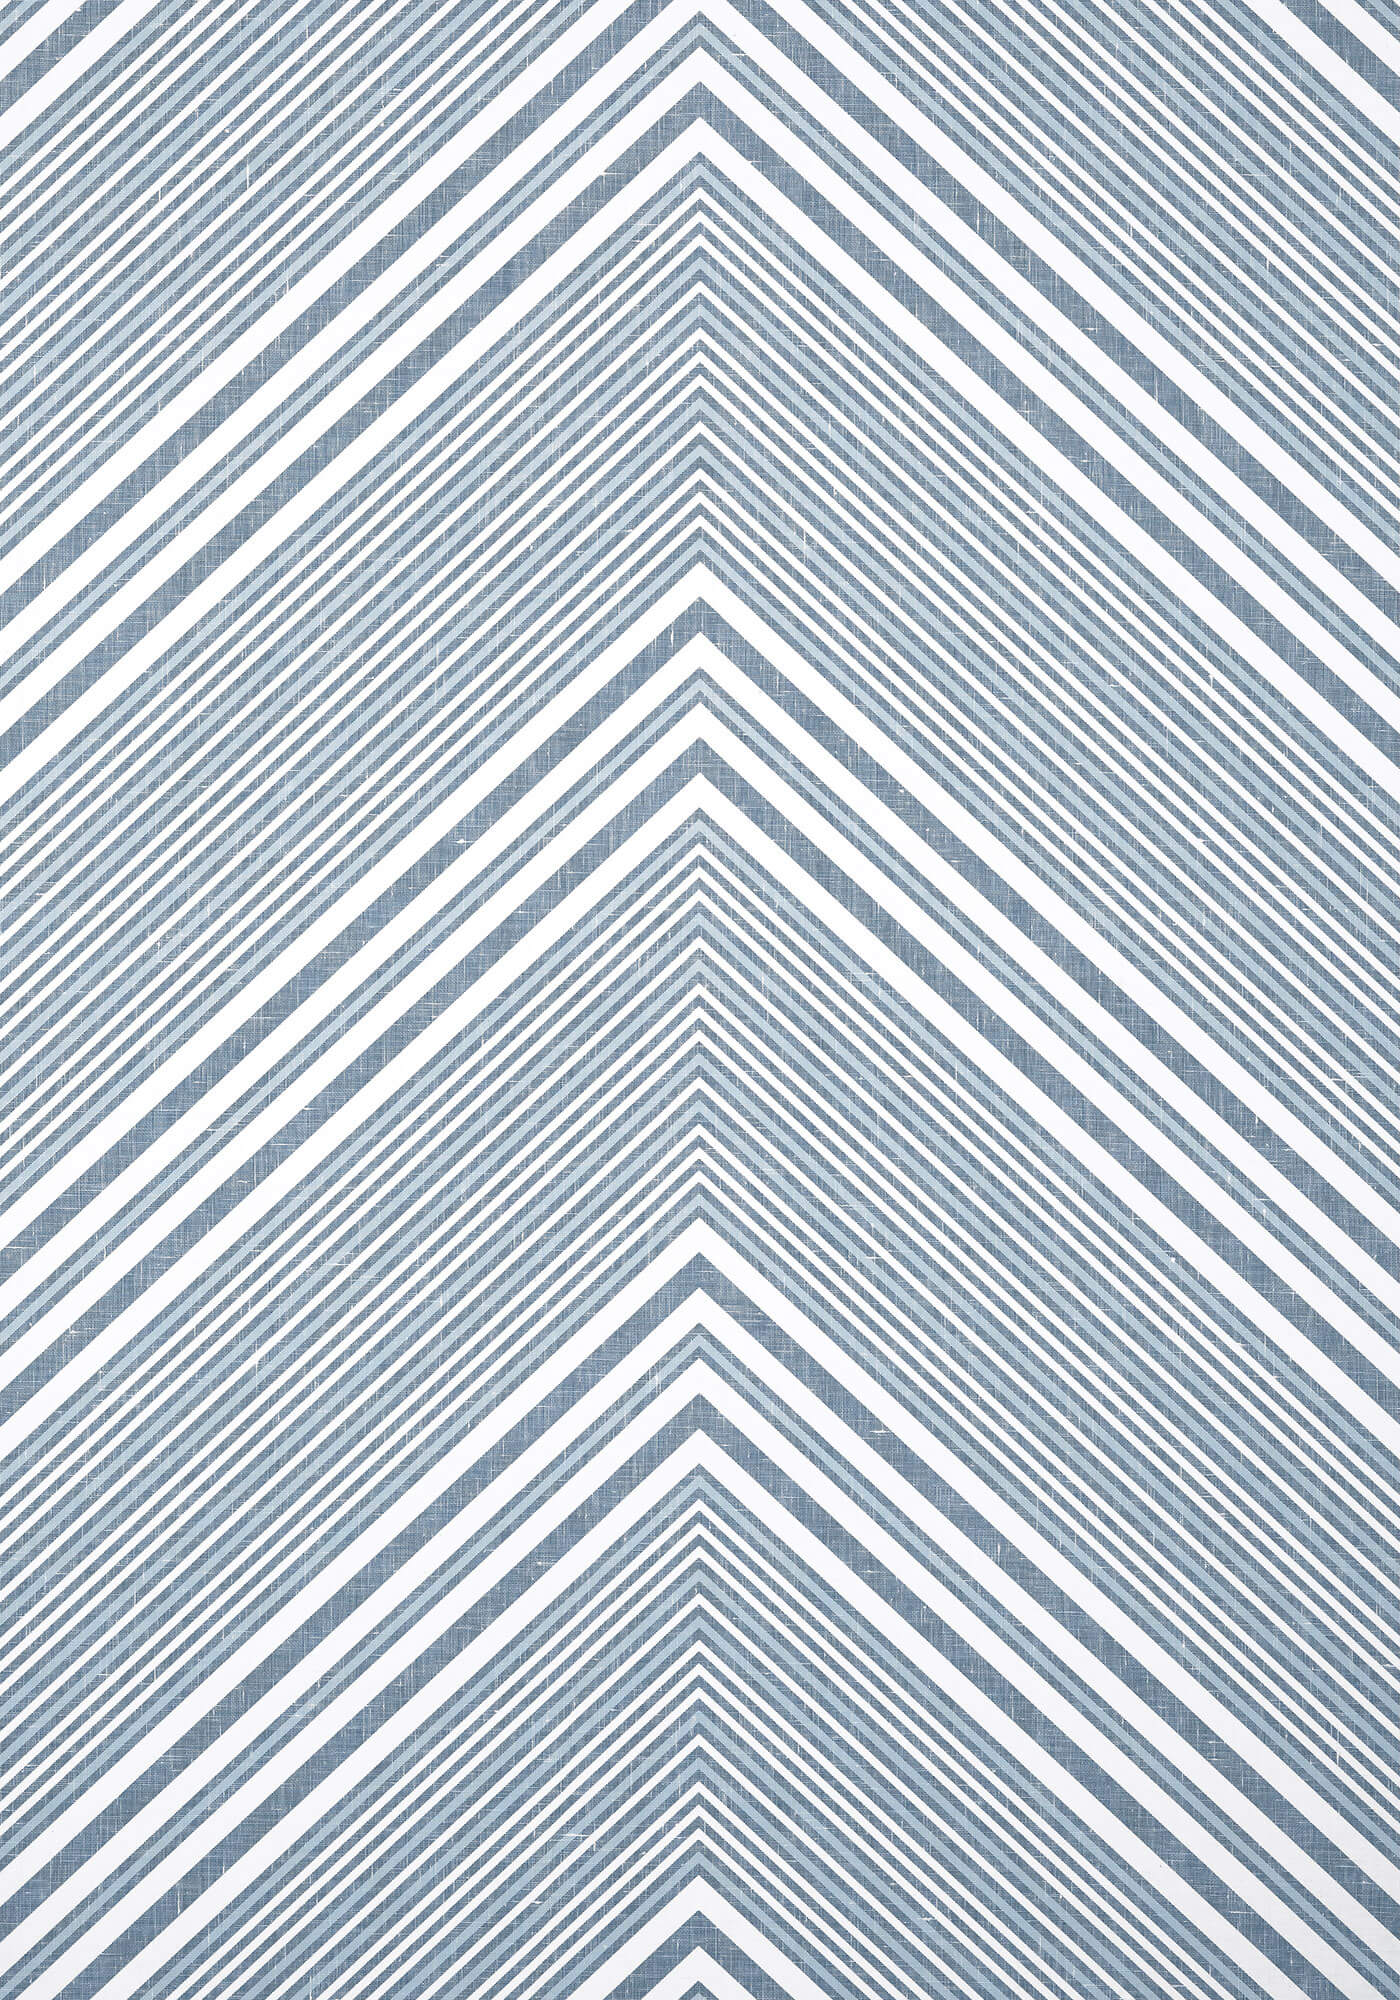 Thibaut Modern Resource 3 Elevation Wallpaper - Blue & White